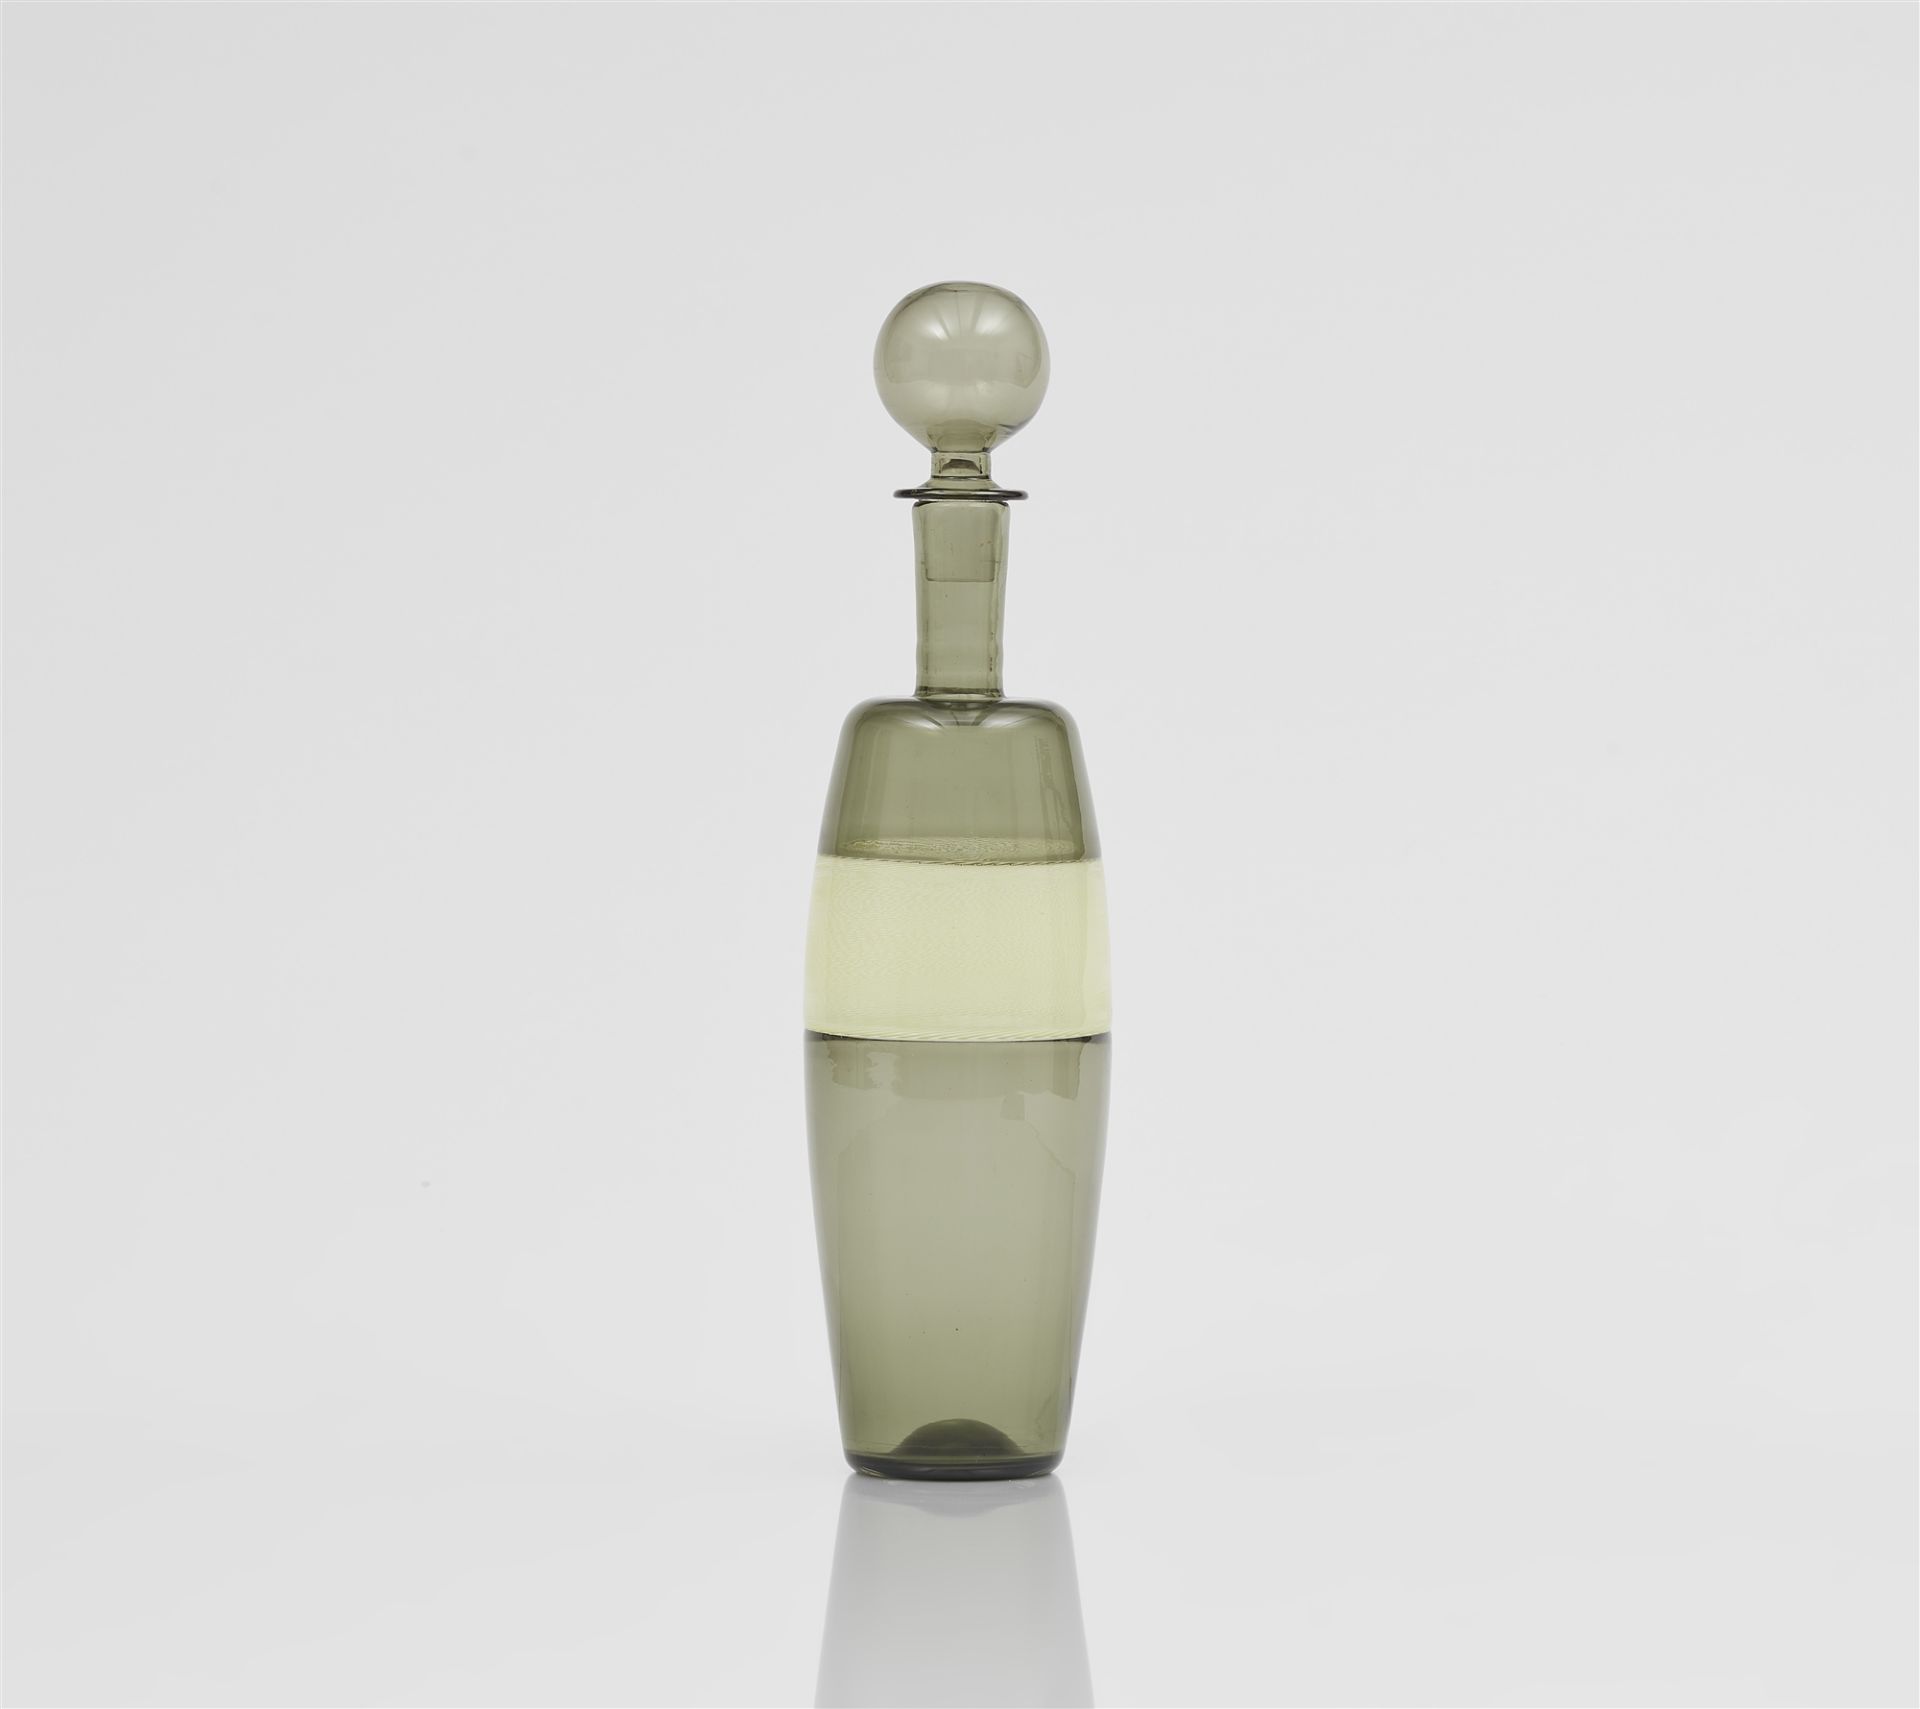 Flasche 'doppio incalmo', Venini & C., Murano, der Entwurf Paolo Venini, um 1956, die Ausführung zei